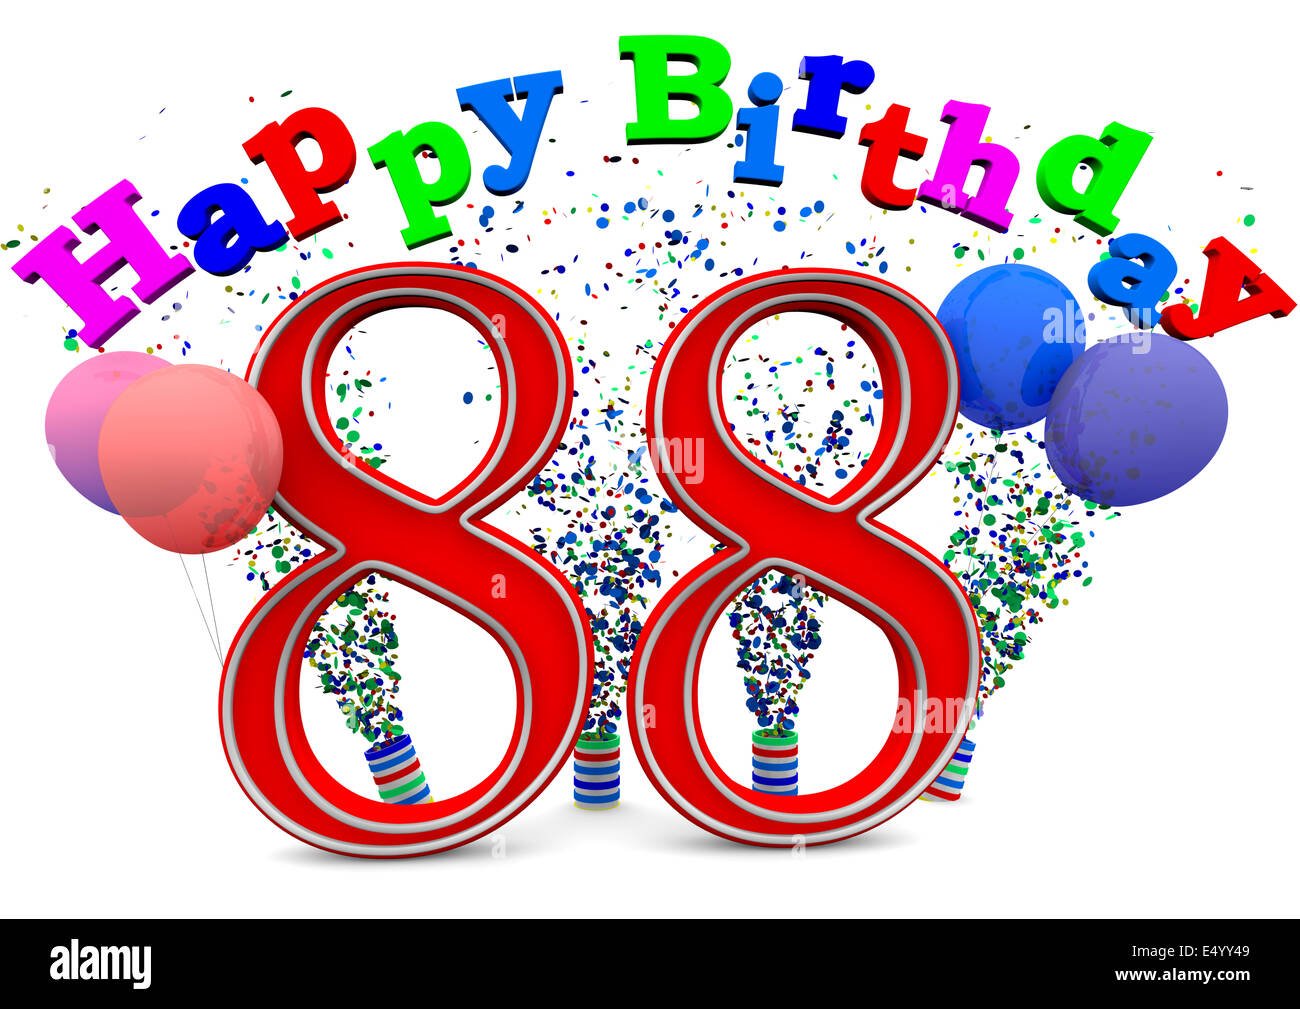 Поздравление с рождением 88 лет. 88 Лет с днем рождения. Поздравление с днём рождения 88 лет. Поздравление с 88 летием женщине. Открытки с днем рождения 88 лет.